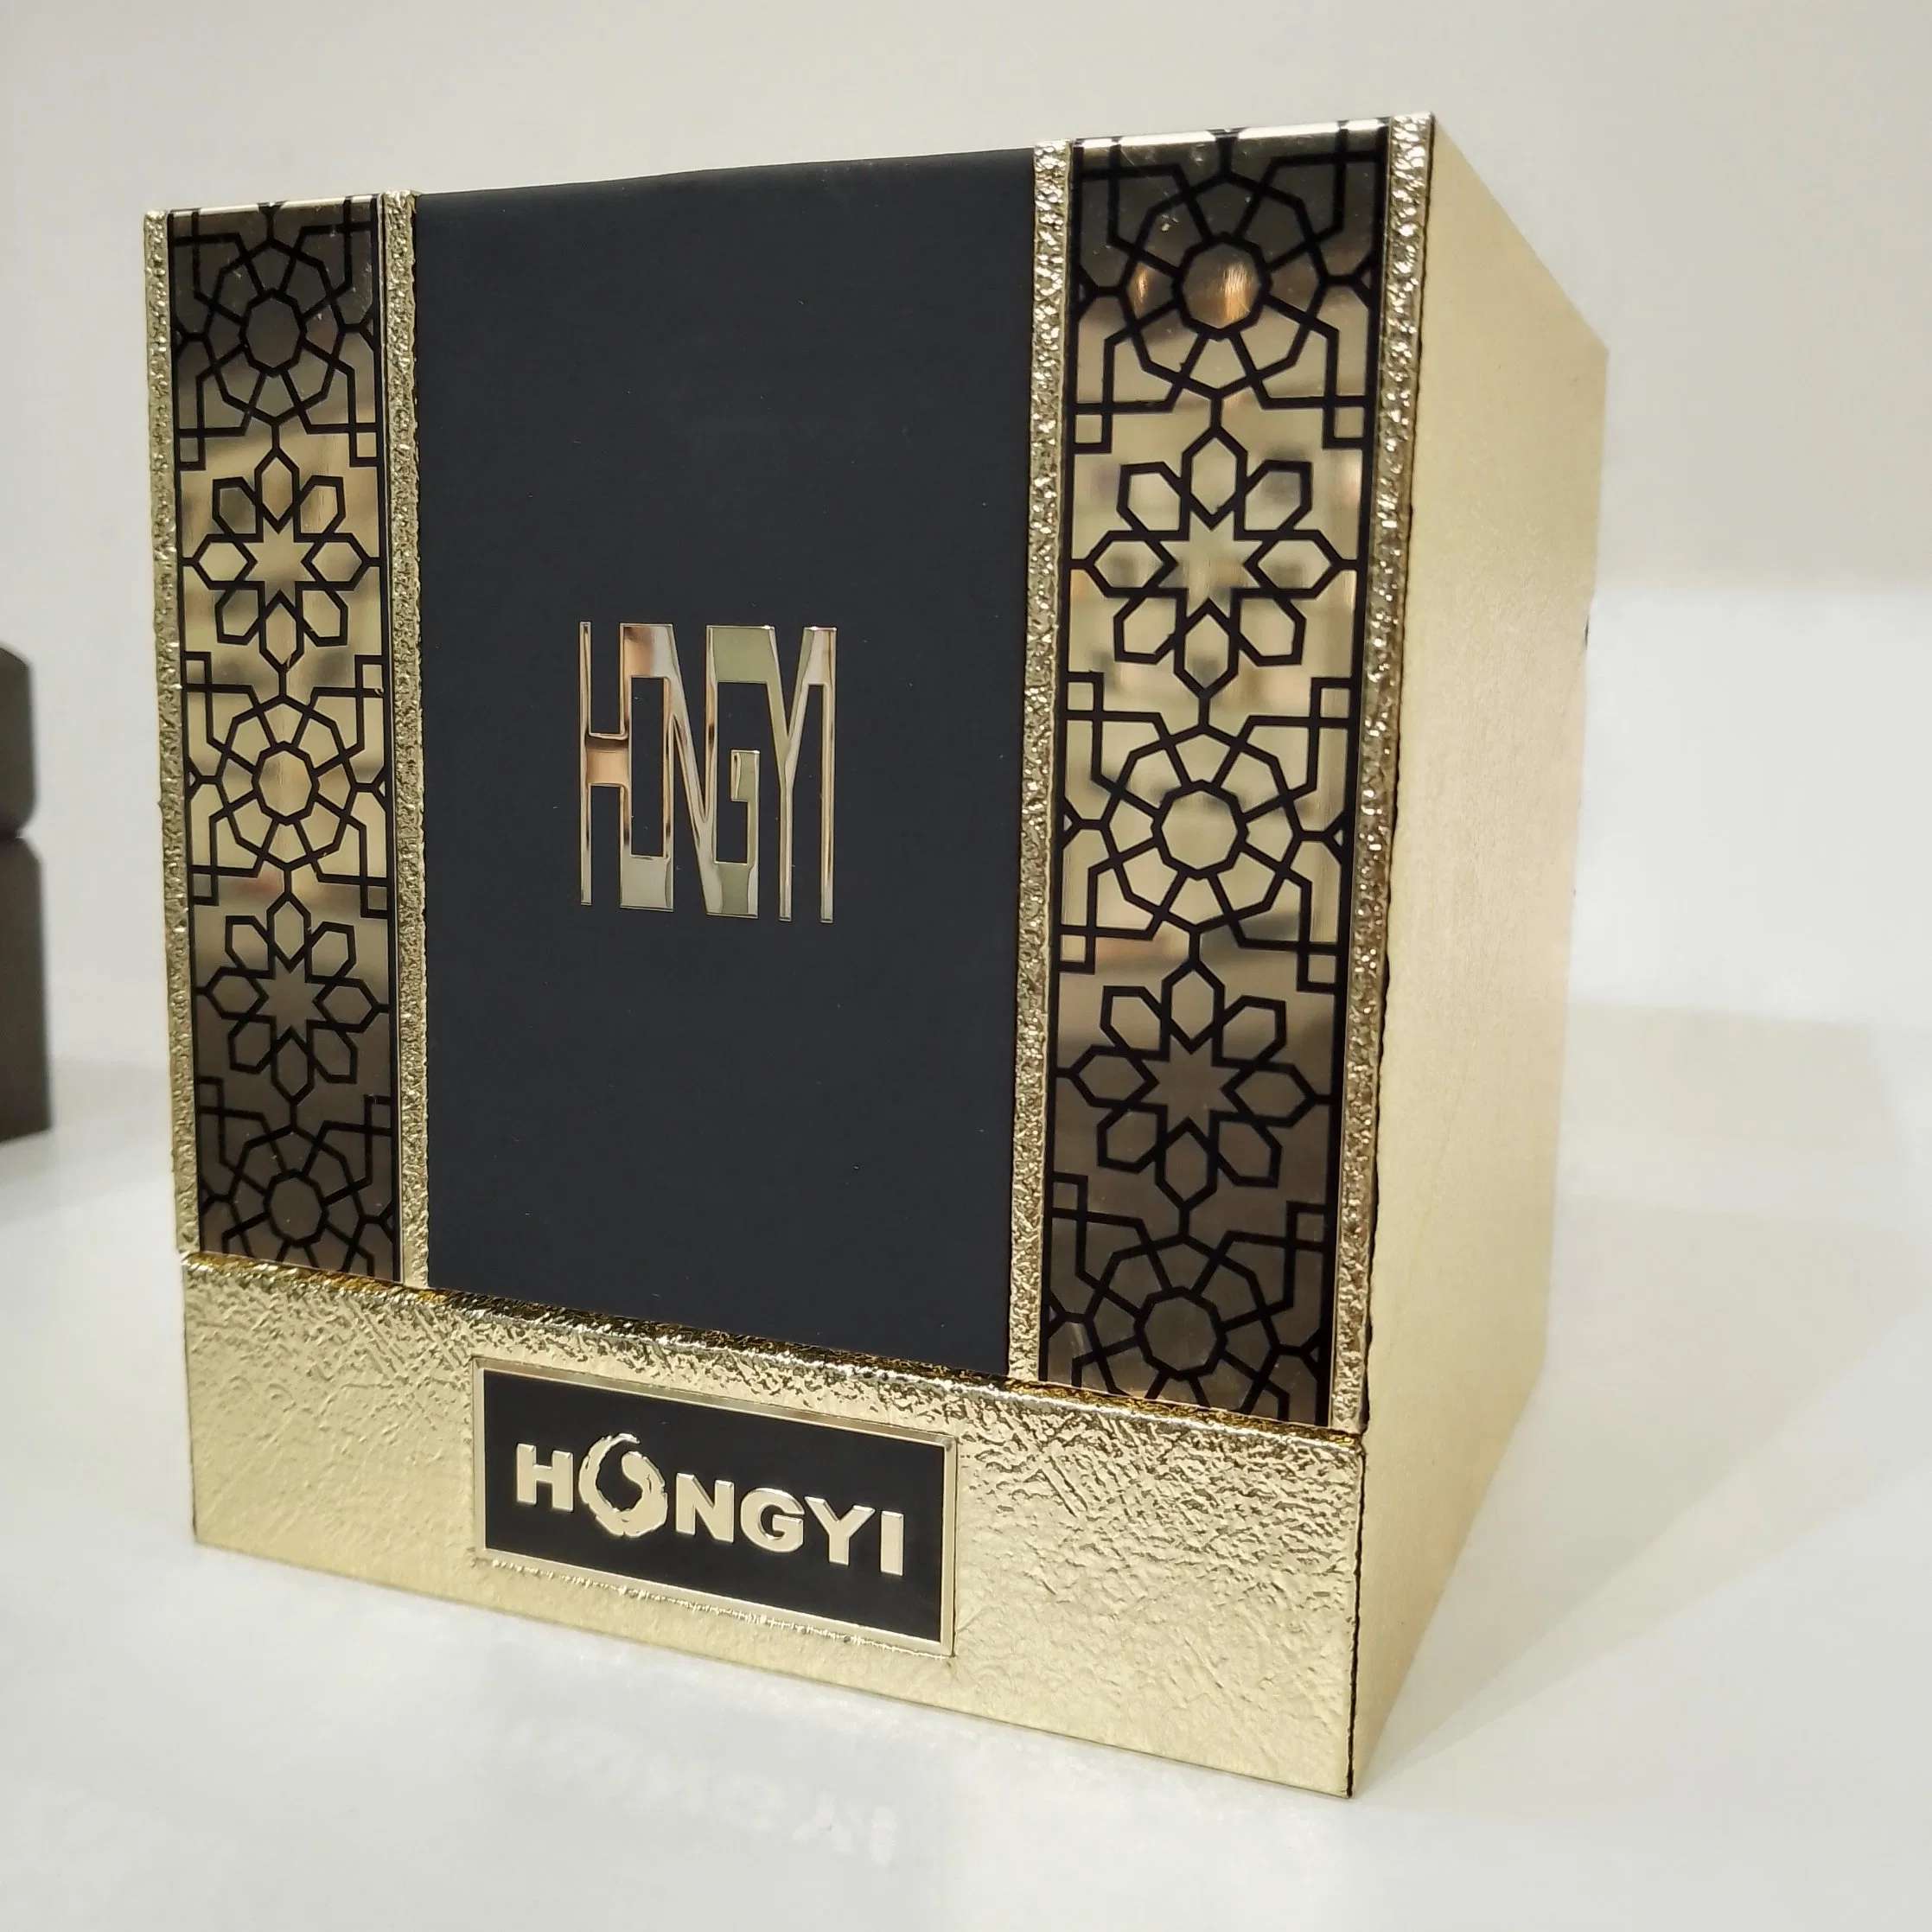 Benutzerdefinierte Box Karton Magnetverschluss Faltbare Verpackung Holz Verpackung Geschenk Box für Kleidung/Kosmetik/Kunst und Kunsthandwerk/Kerze/Geschenk/Parfüm